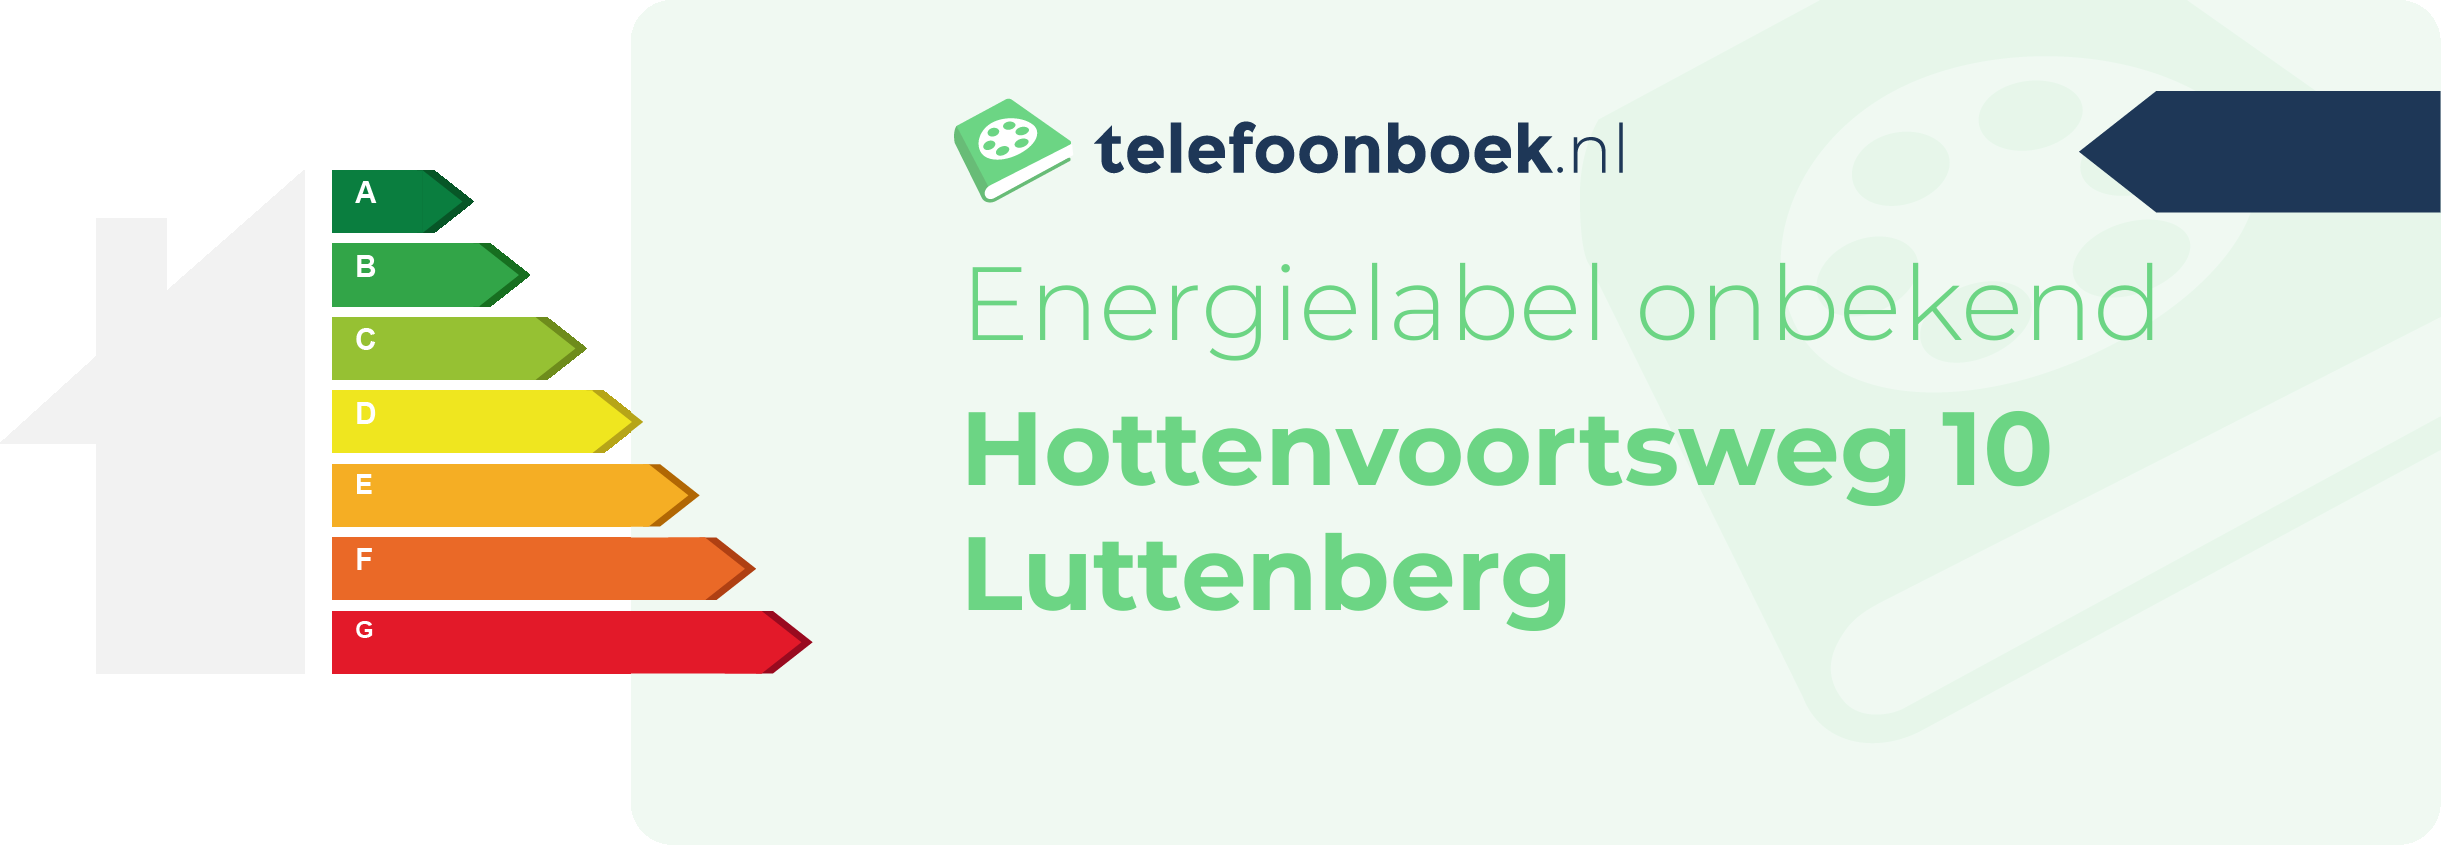 Energielabel Hottenvoortsweg 10 Luttenberg